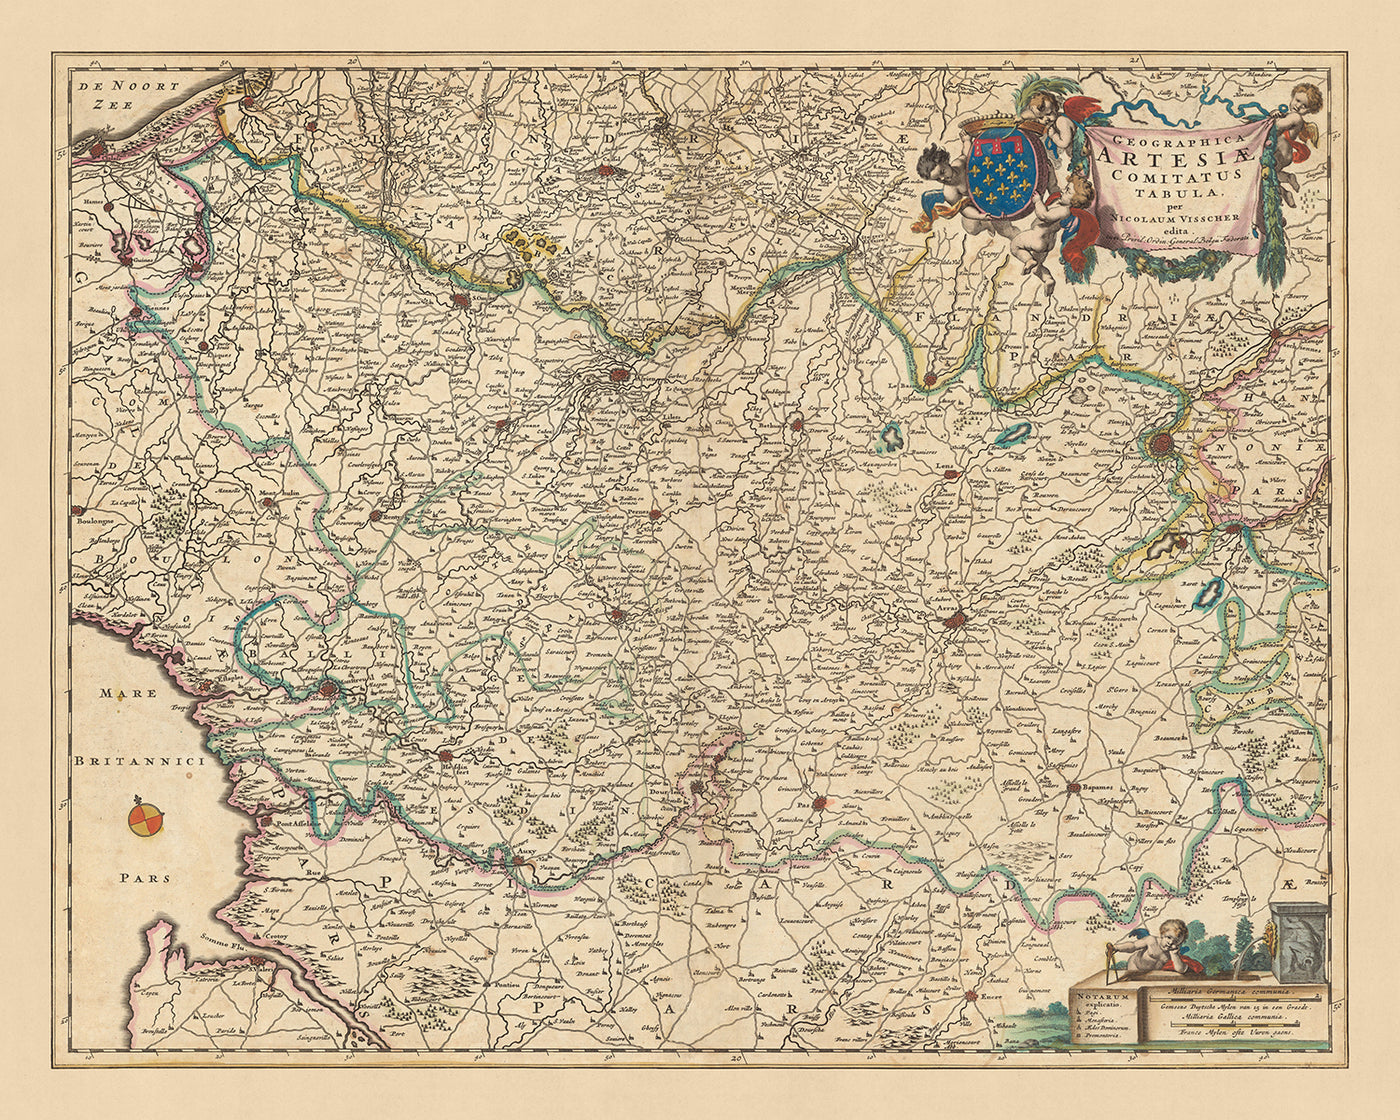 Old Map of County of Artois by Visscher, 1690: Calais, Arras, Béthune, Douai, Caps et Marais d'Opale Park